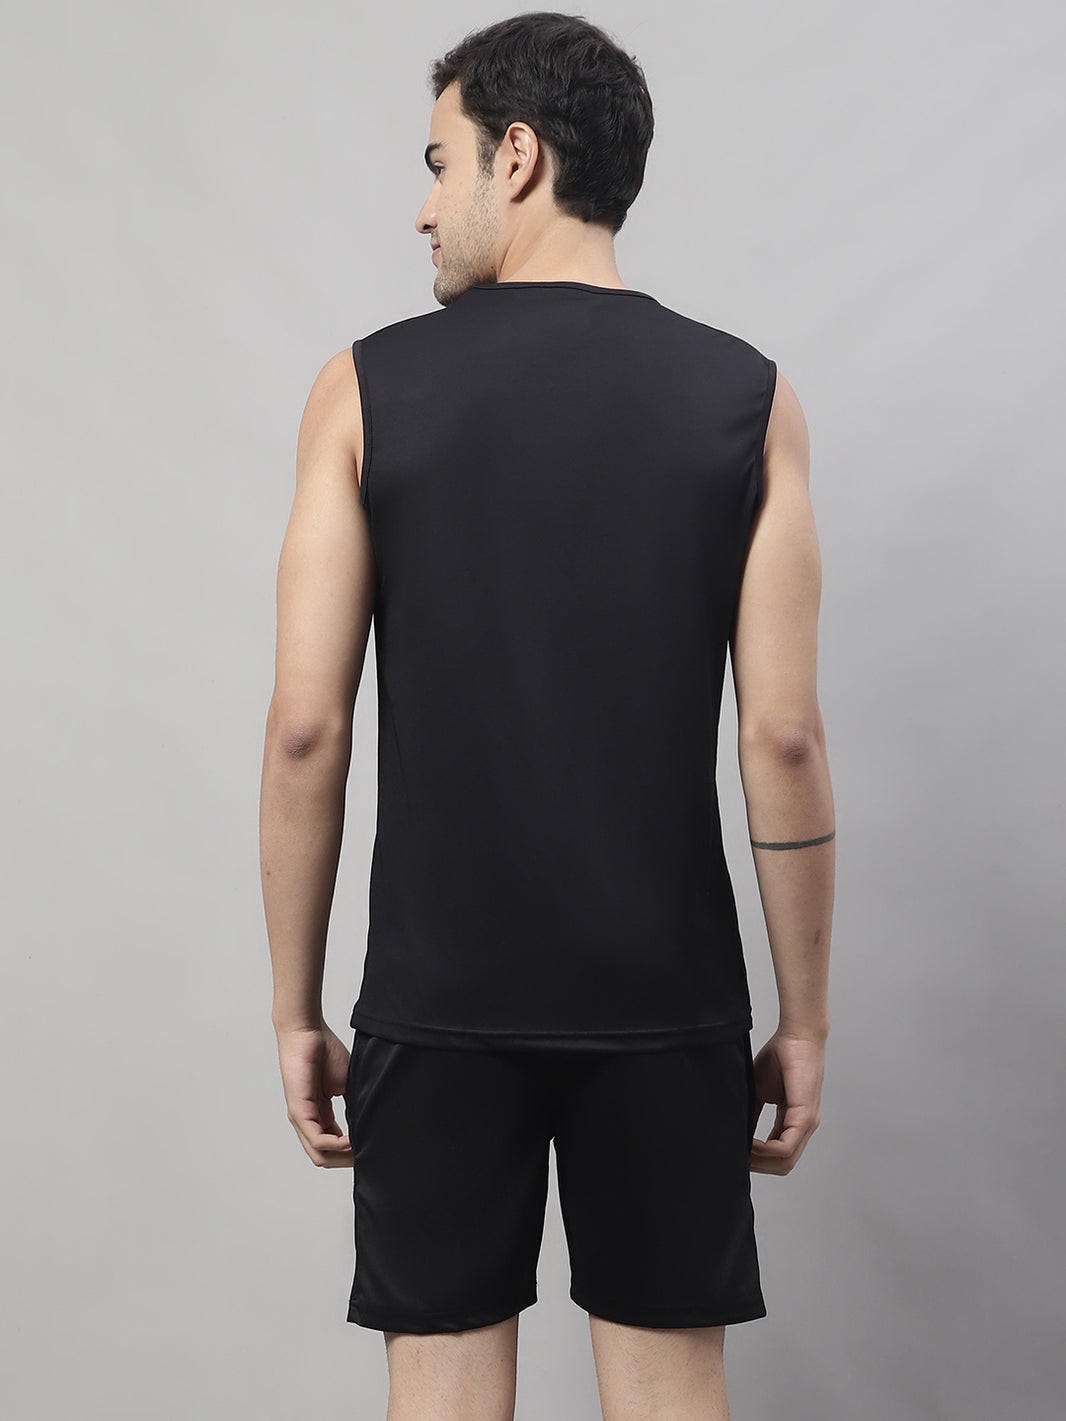 Vimal Jonney Black Dryfit Lycra Solid Co-ord Set Tracksuit For Men(Zip On 1 Side Pocket)